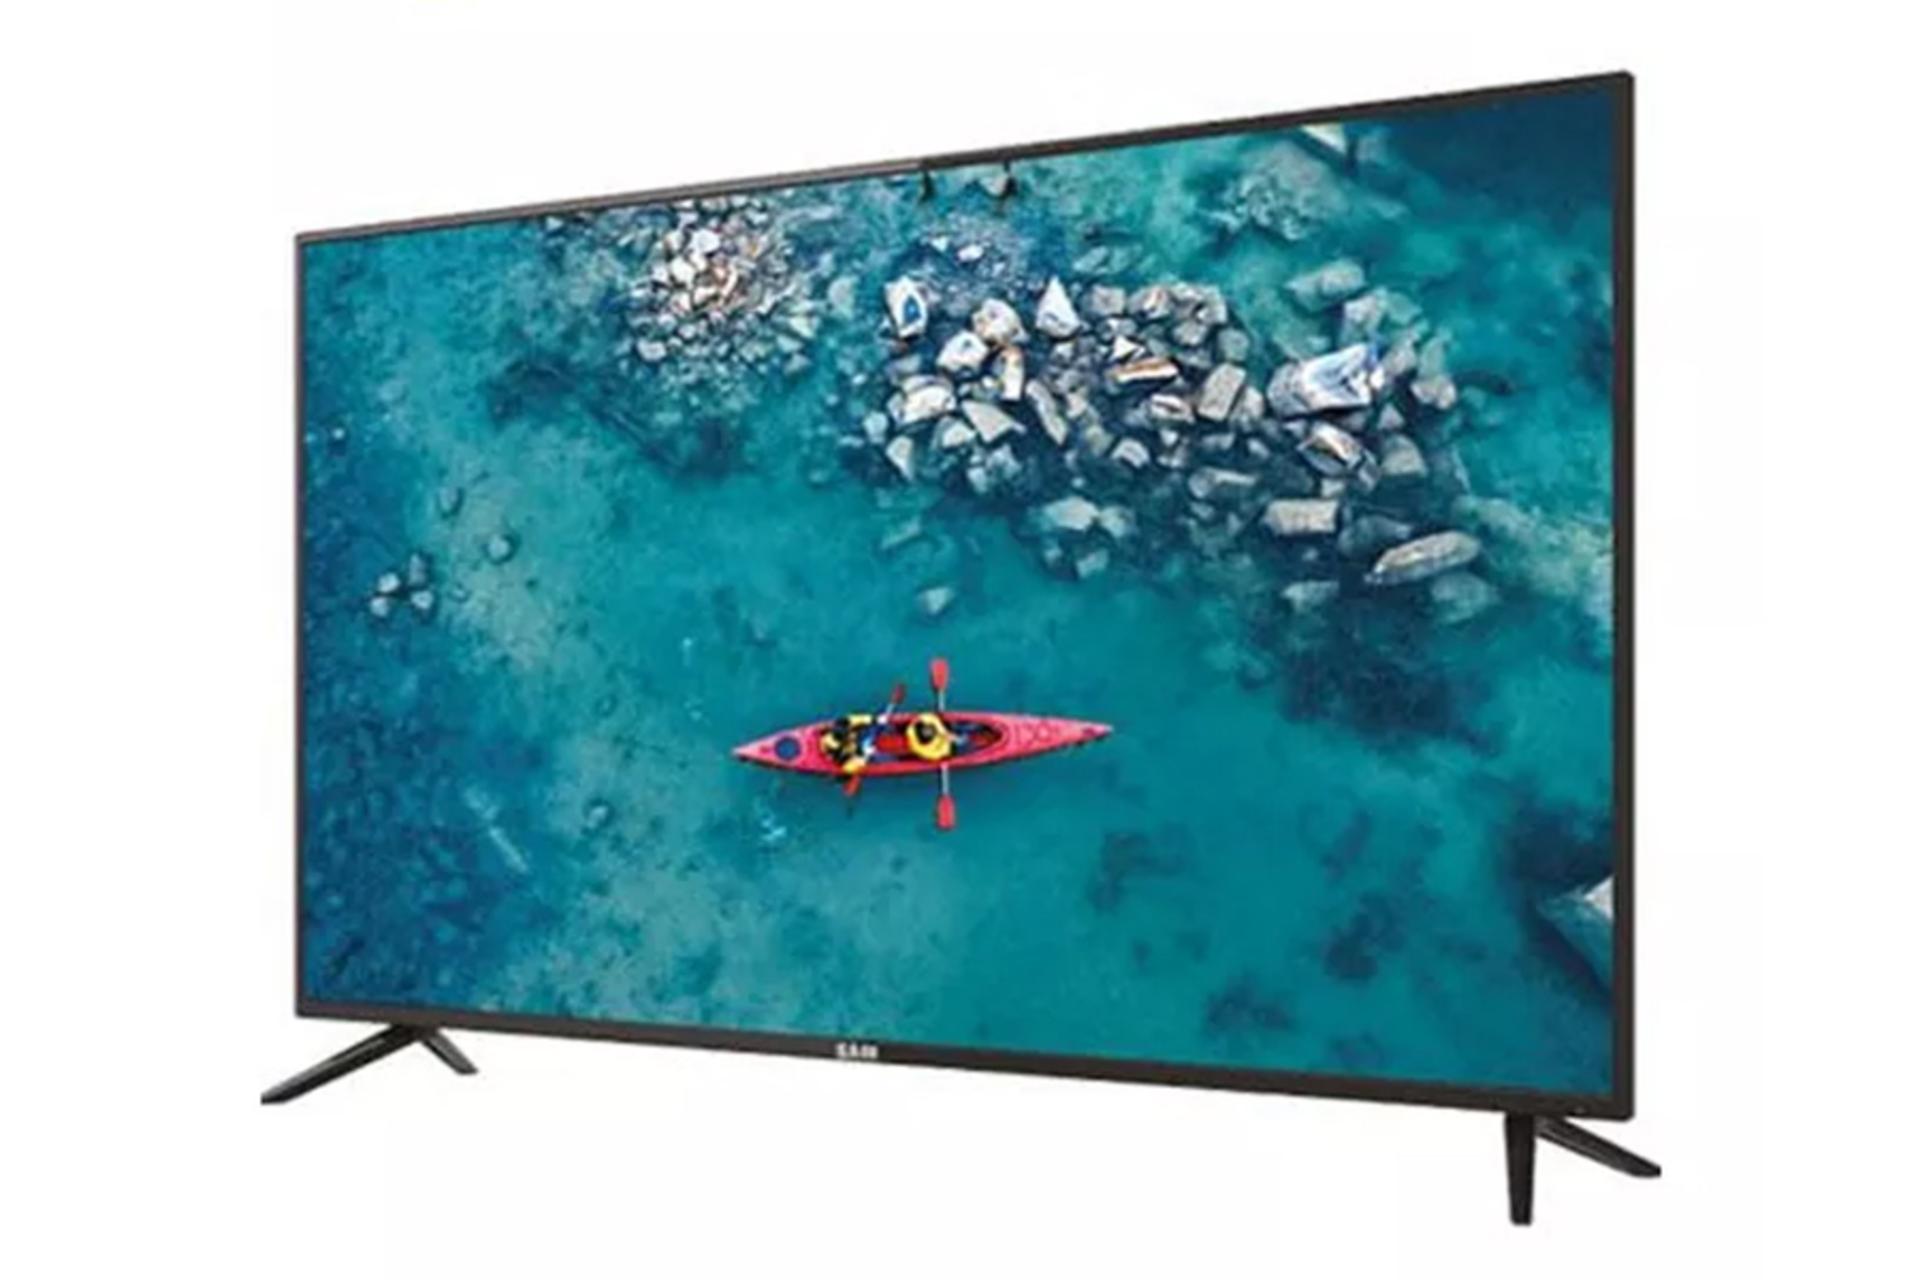 قیمت تلویزیون سام الکترونیک T5350TH مدل 50 اینچ + مشخصات